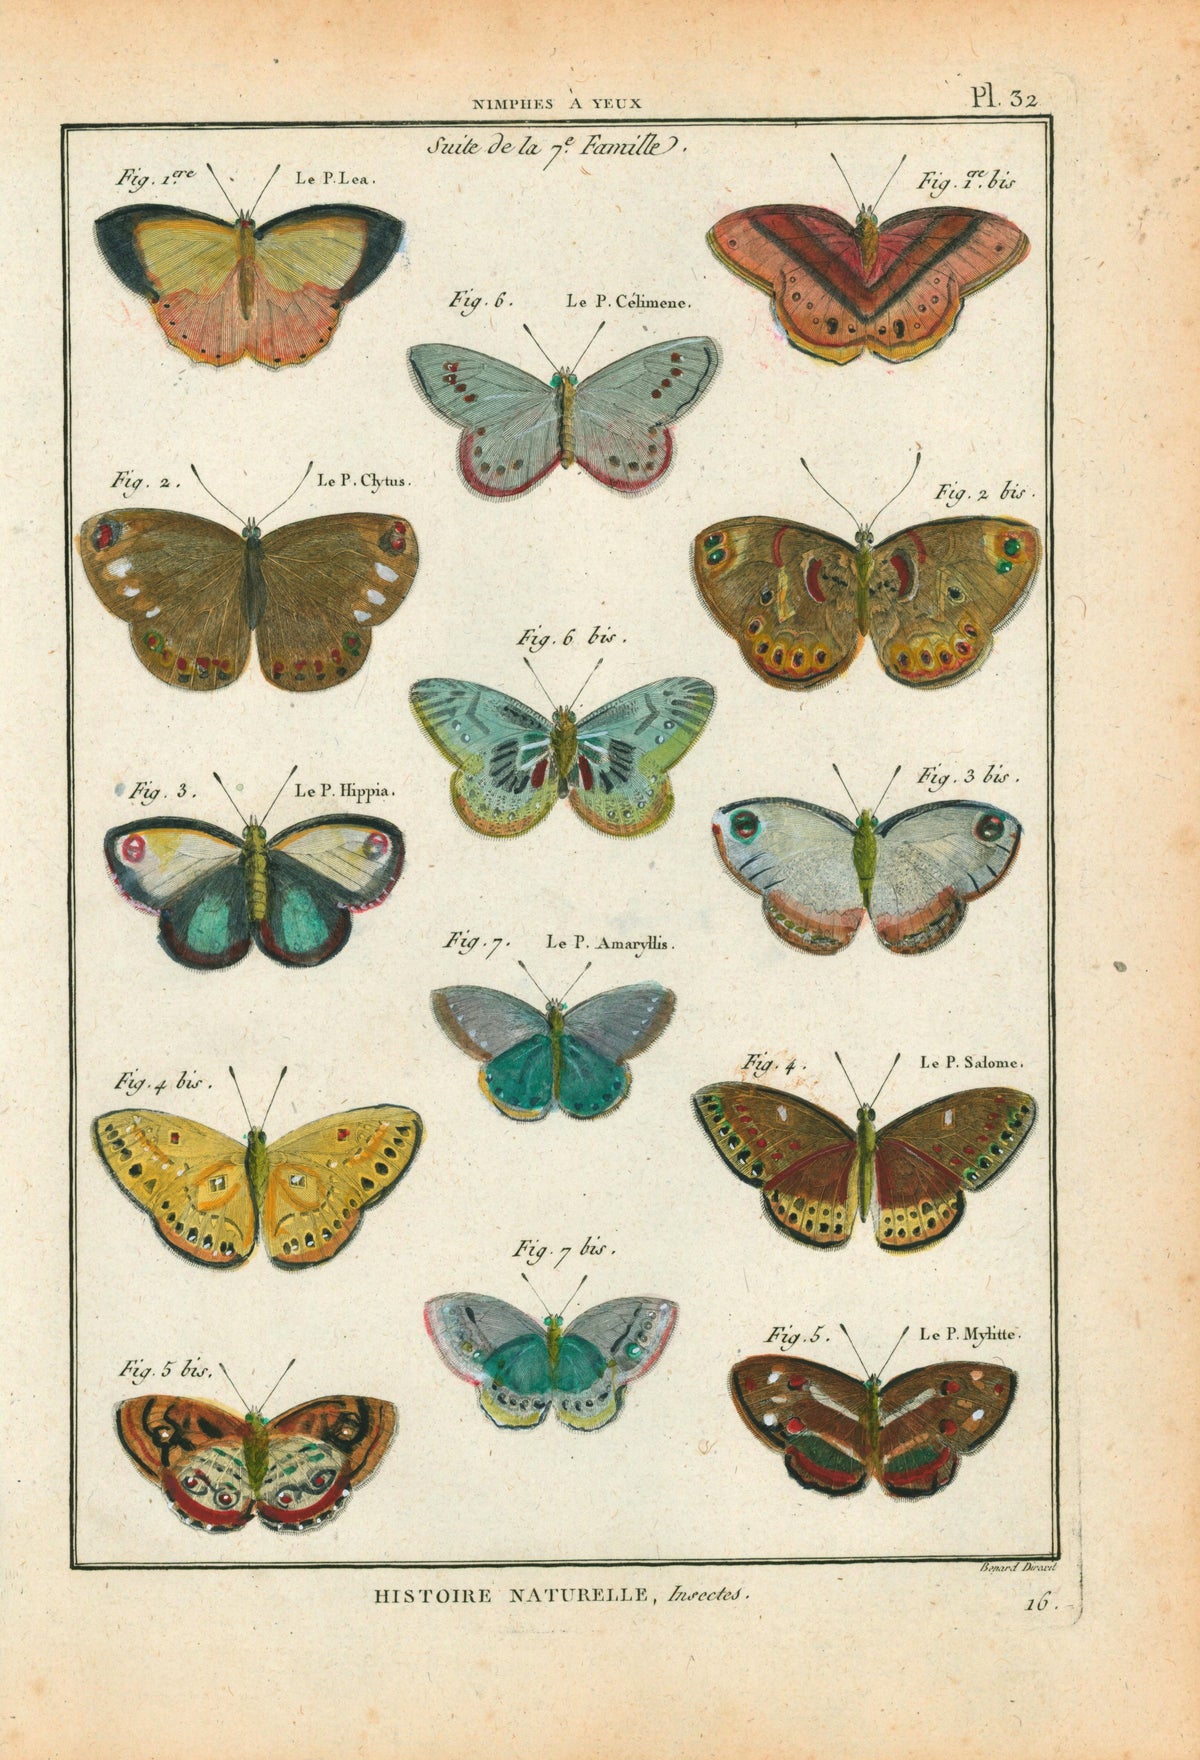 Latreille Butterflies- Hand Colored Engraving - Authentic Vintage Antique Print